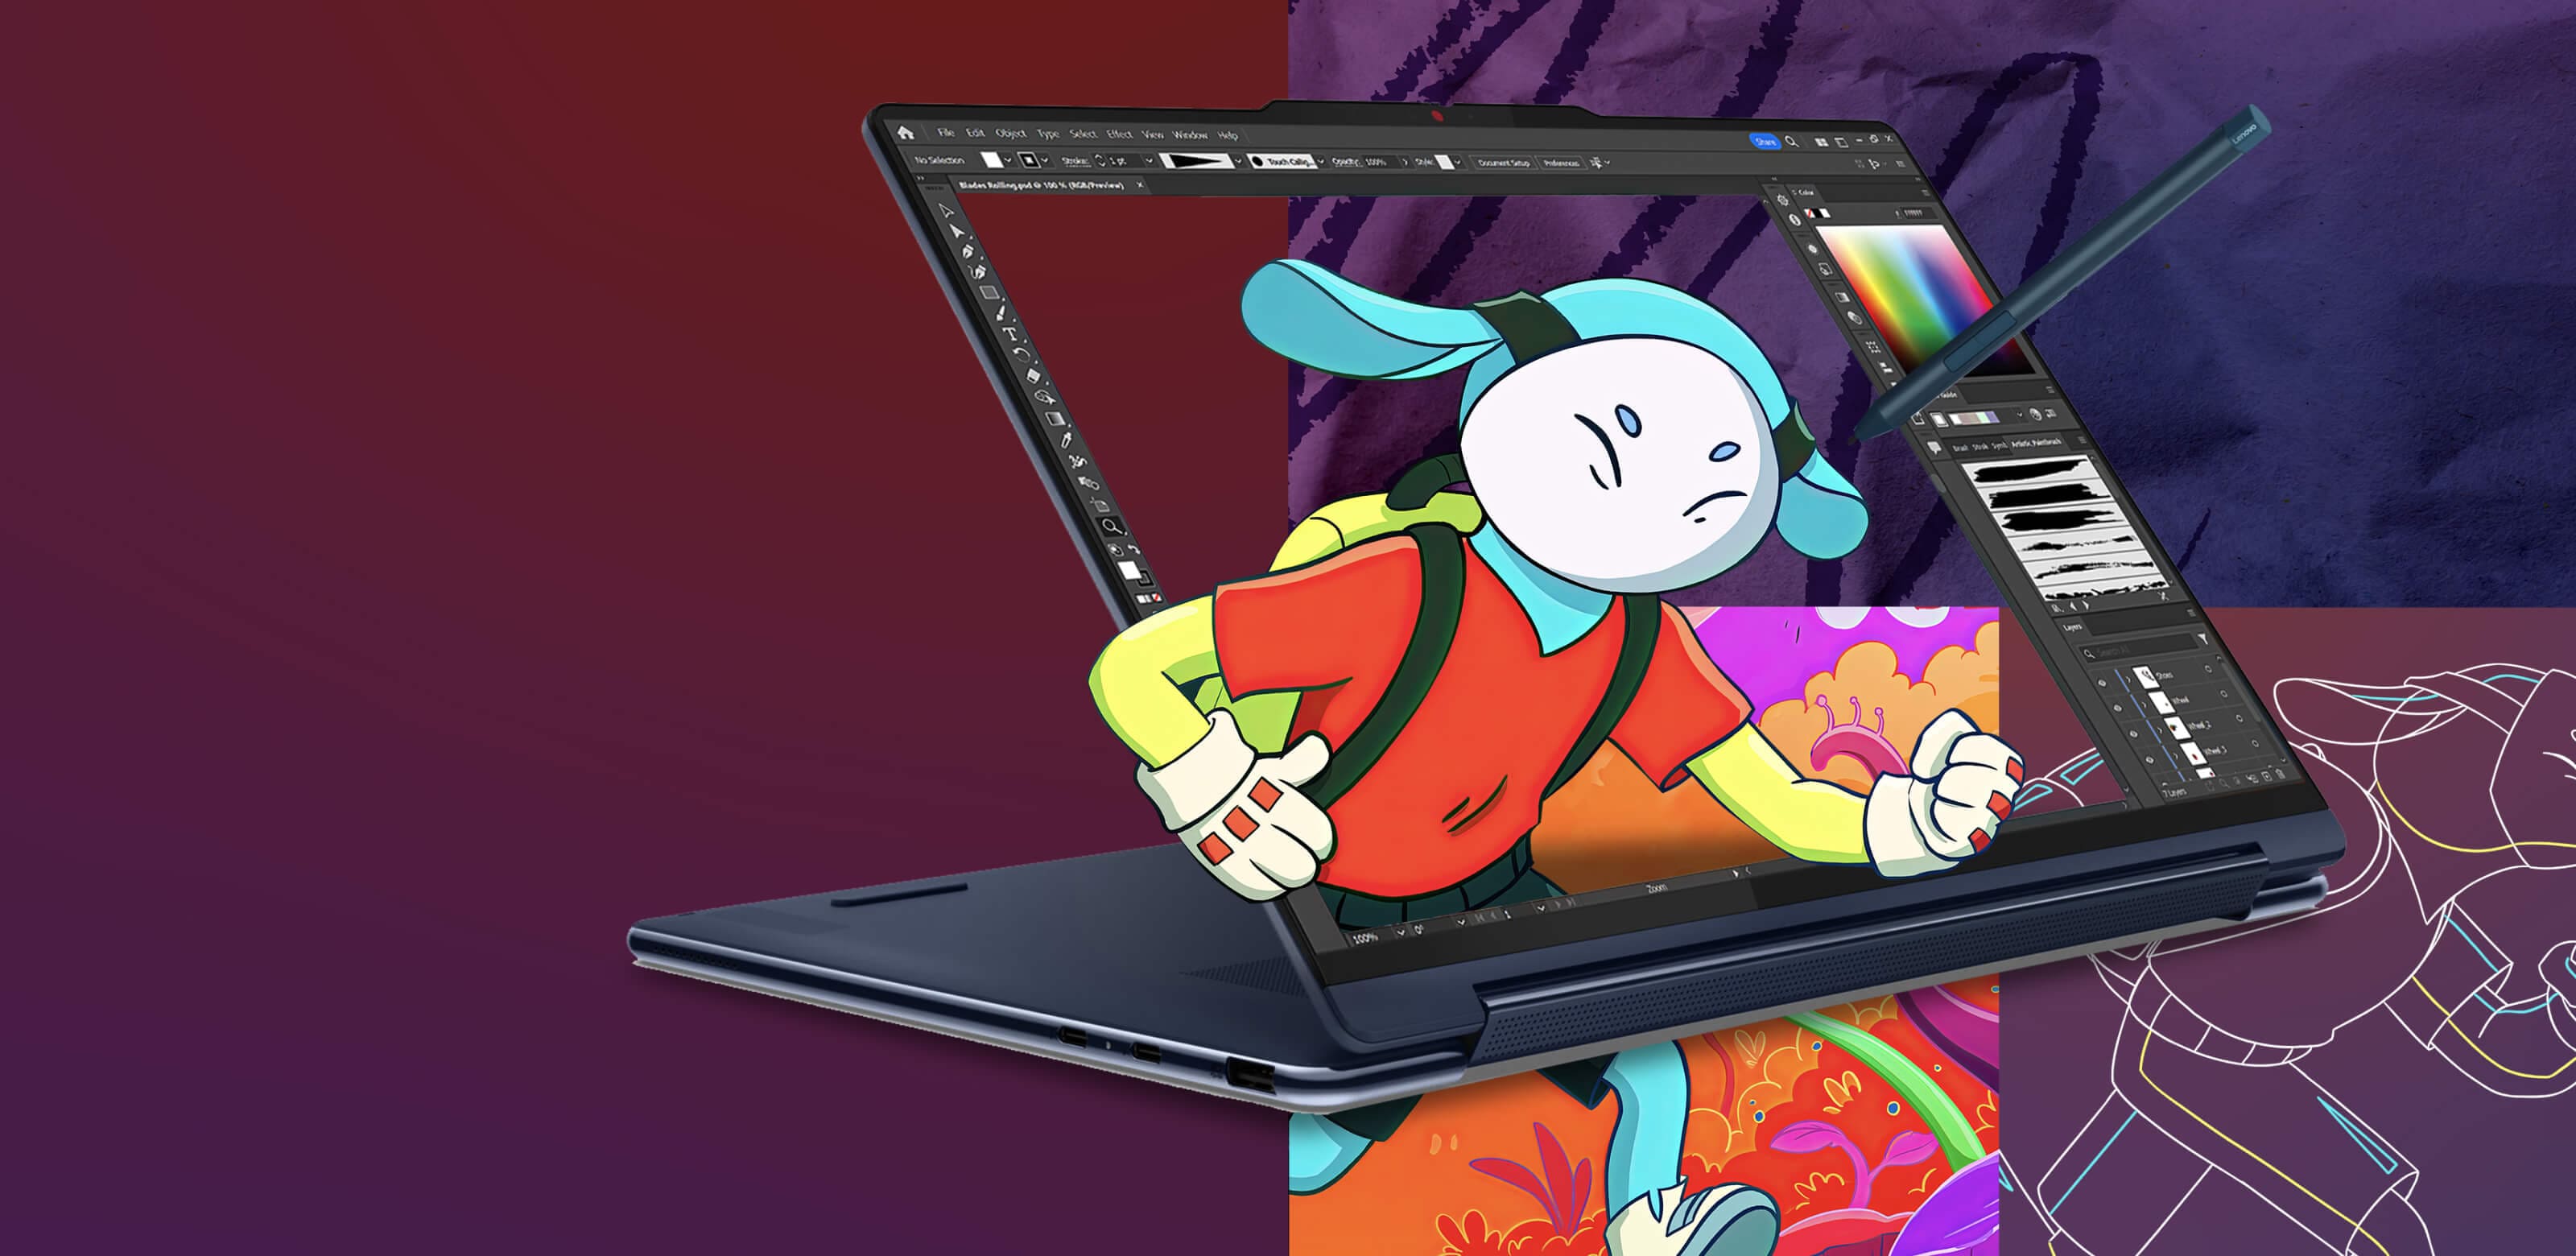 Lenovo Yoga Notebook im Standmodus, zeigt ein Bildbearbeitungsprogramm auf dem Bildschirm mit einer animierten Figur, die aus dem Bildschirm hervorkommt.